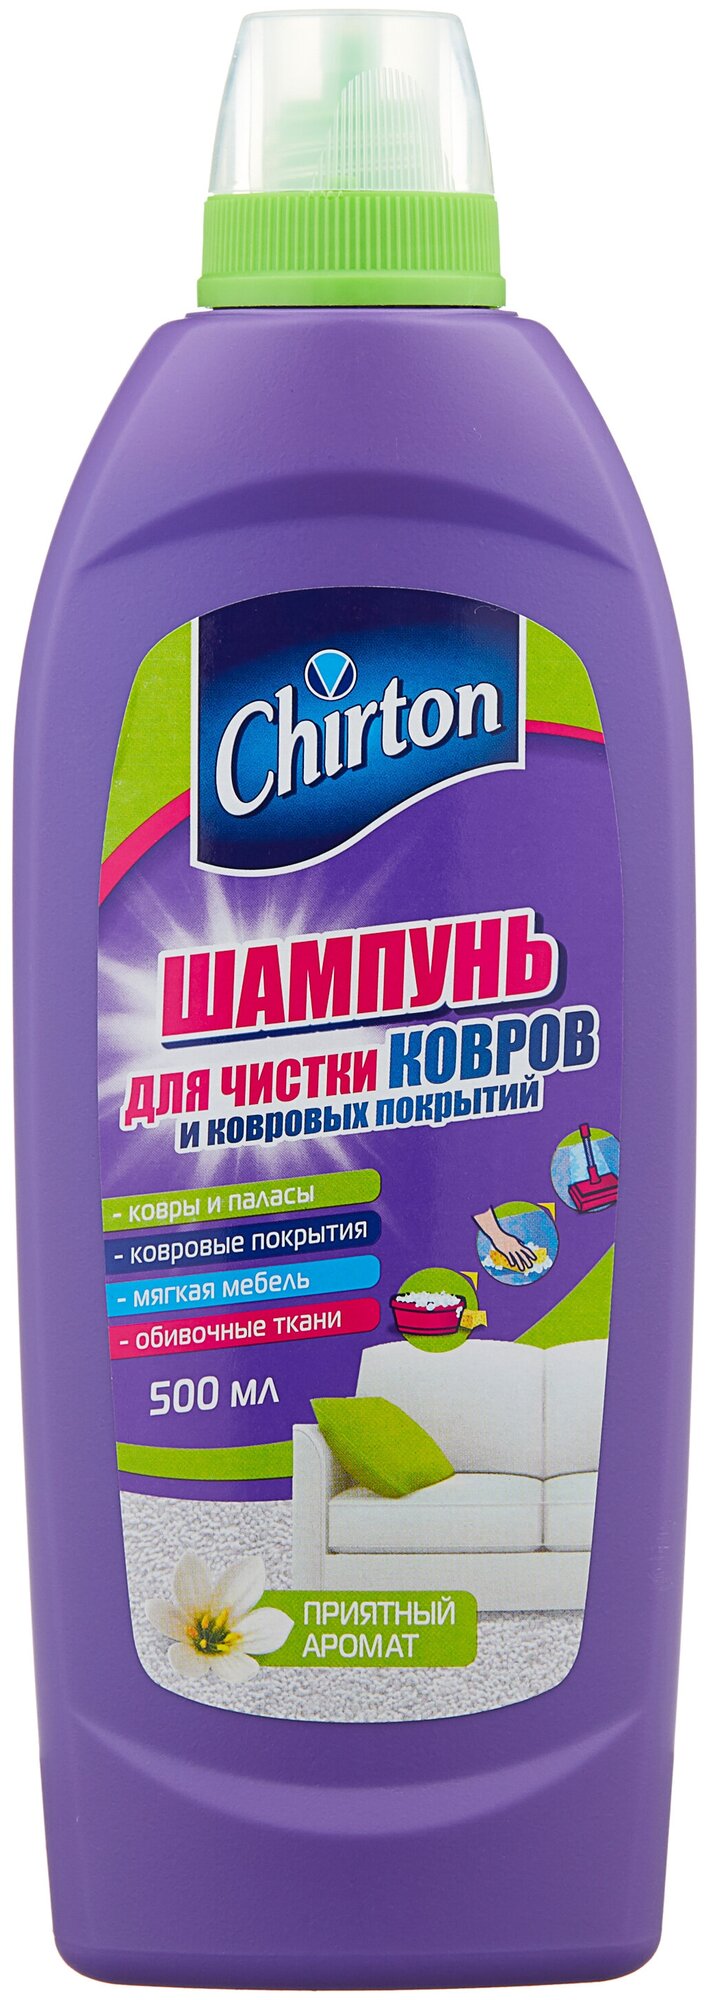 Шампунь для чистки ковров и ковровых покрытий Chirton